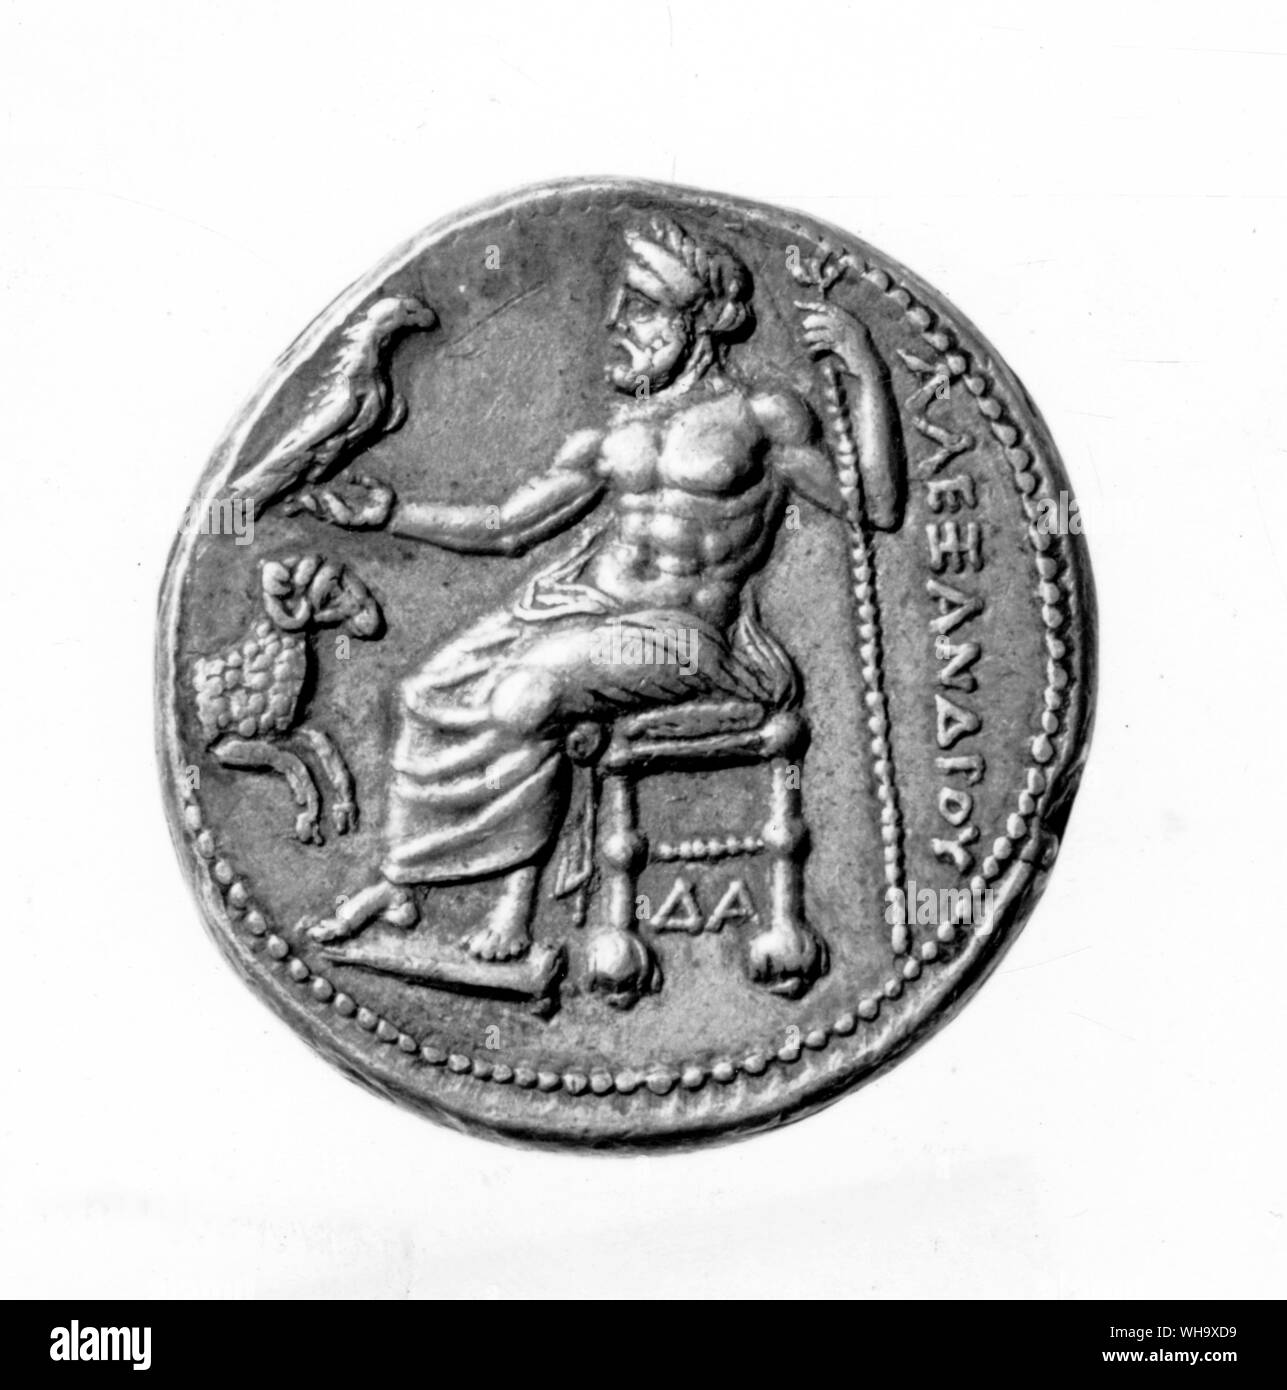 Münzen aus ausländischen Alexander's Münzstätten. Zeus, der schutzgott von Mazedonien, ist von Phidias' berühmte Statue in Olympia kopiert. Stockfoto